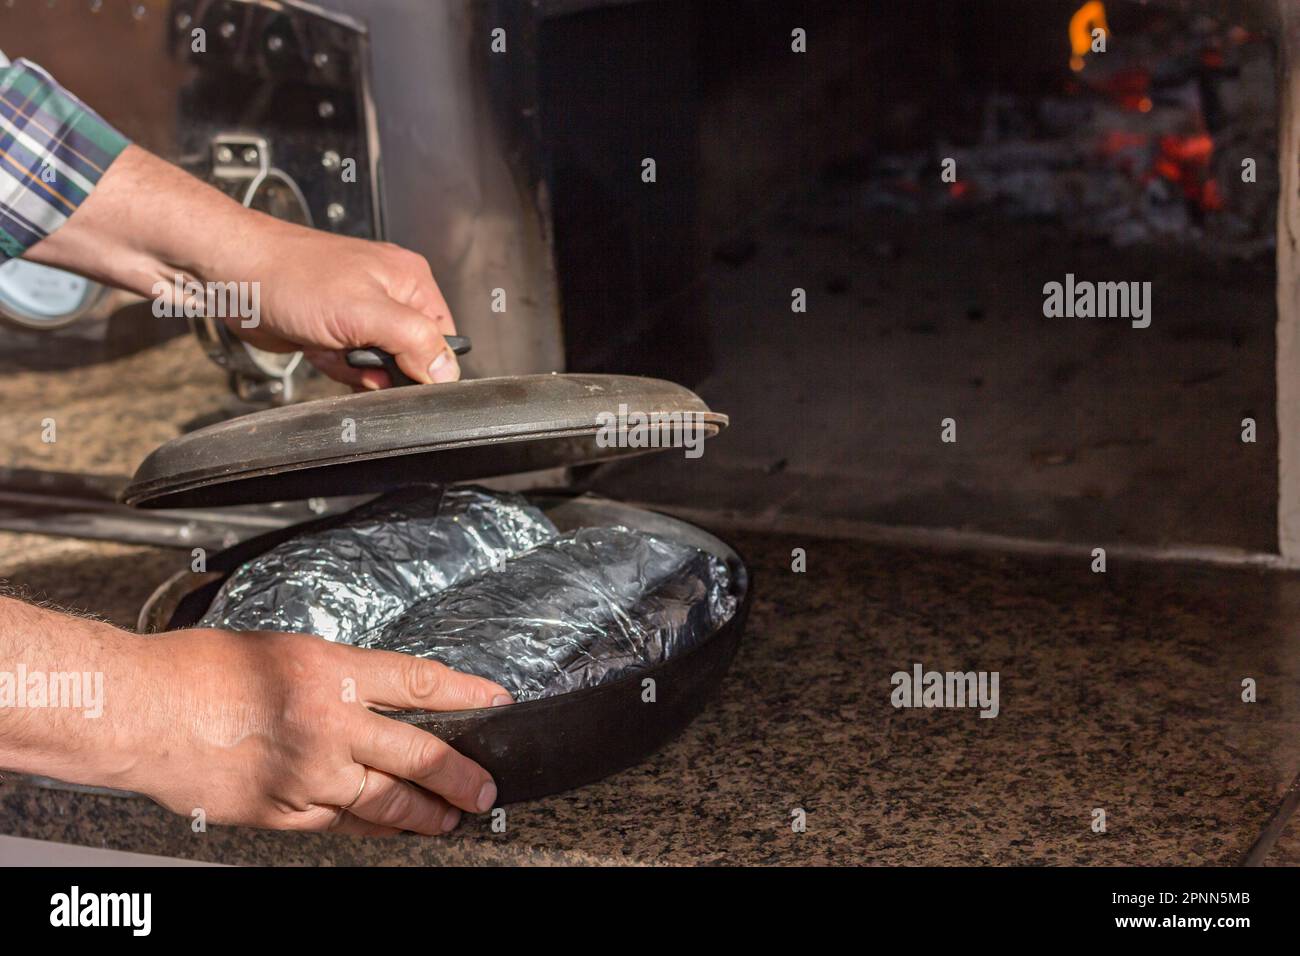 Le processus de cuisson de la viande. Accueil cuisine Recettes Banque D'Images